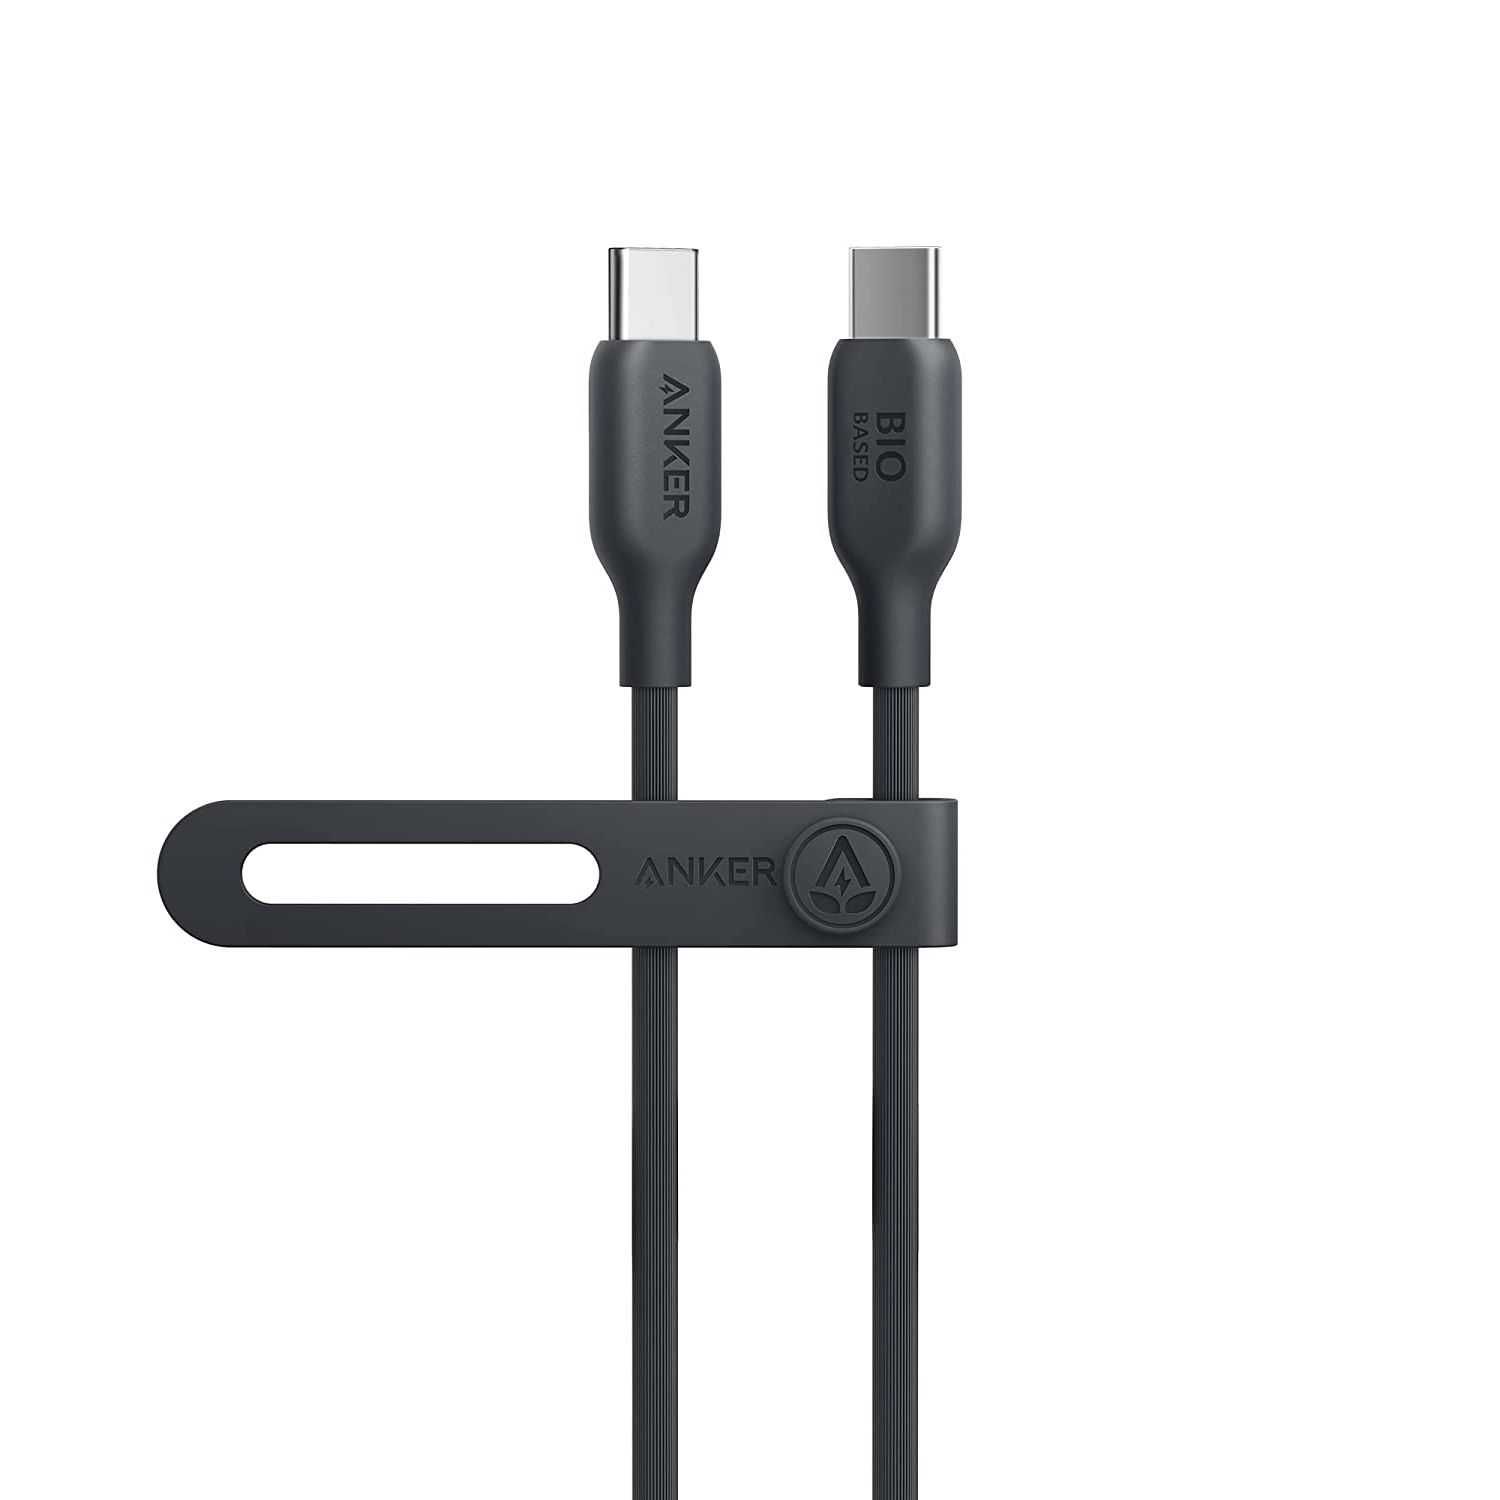 Anker 543 Eco Bio USB-C към USB-C кабел, 100W, 0.9м, бял/черен цвят